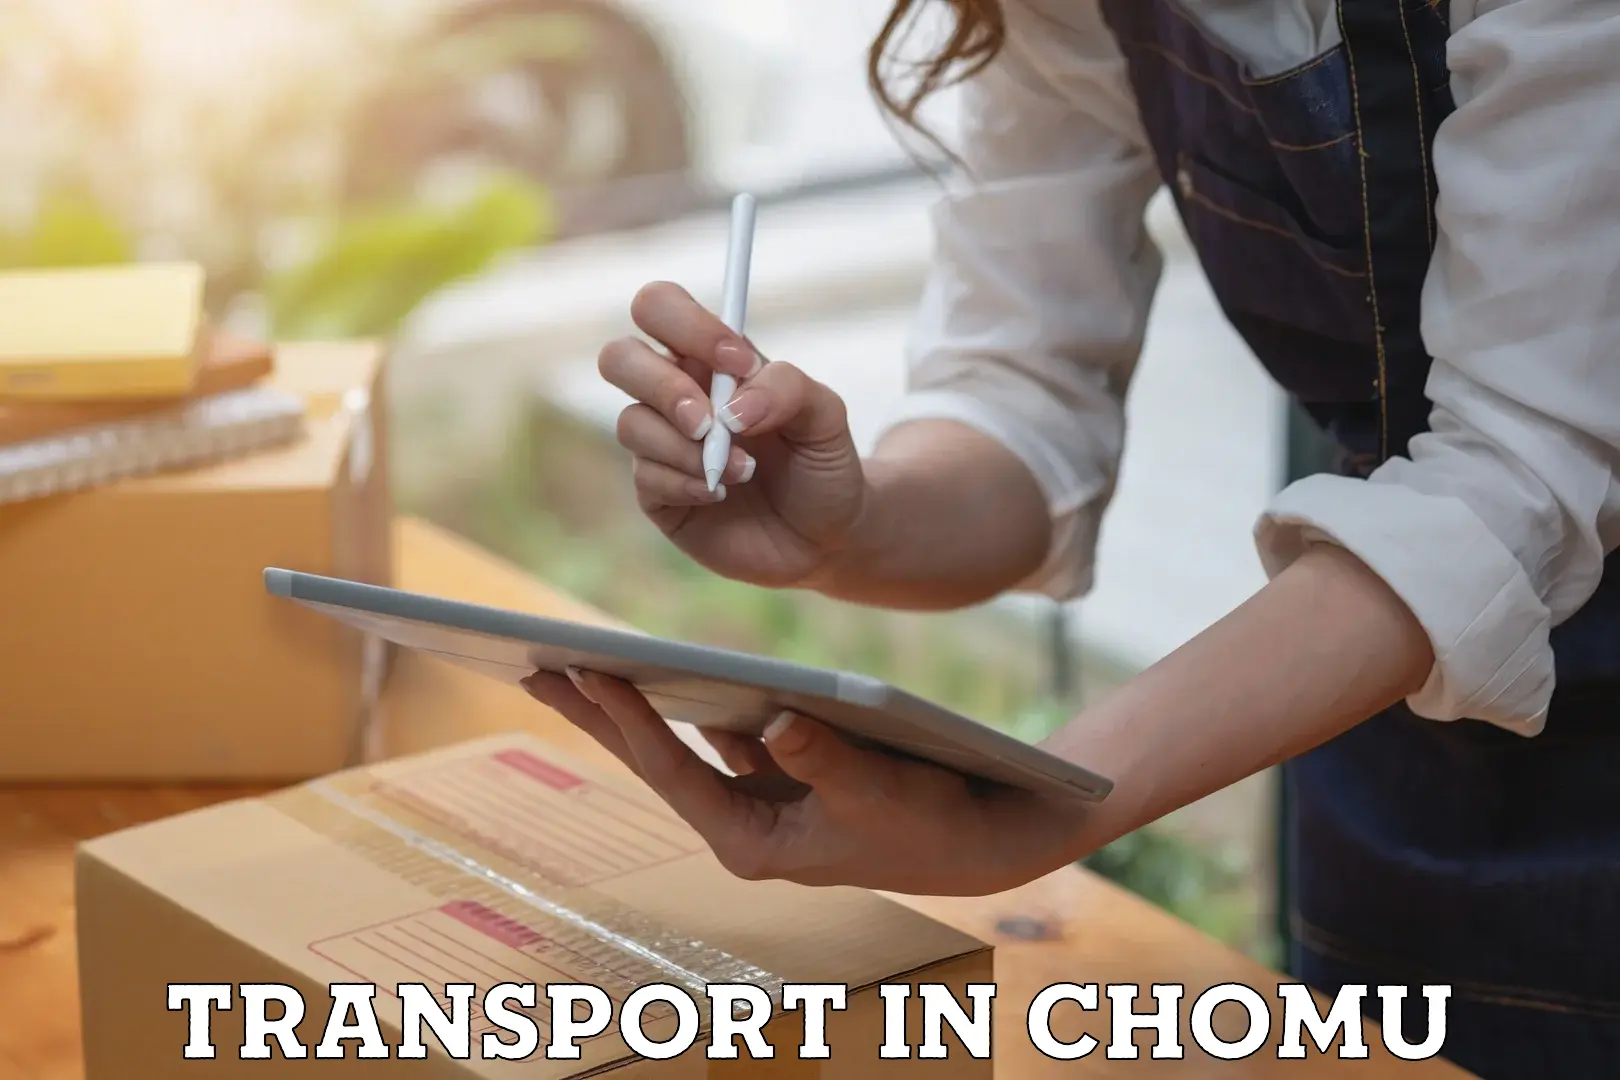 Intercity transport in Chomu